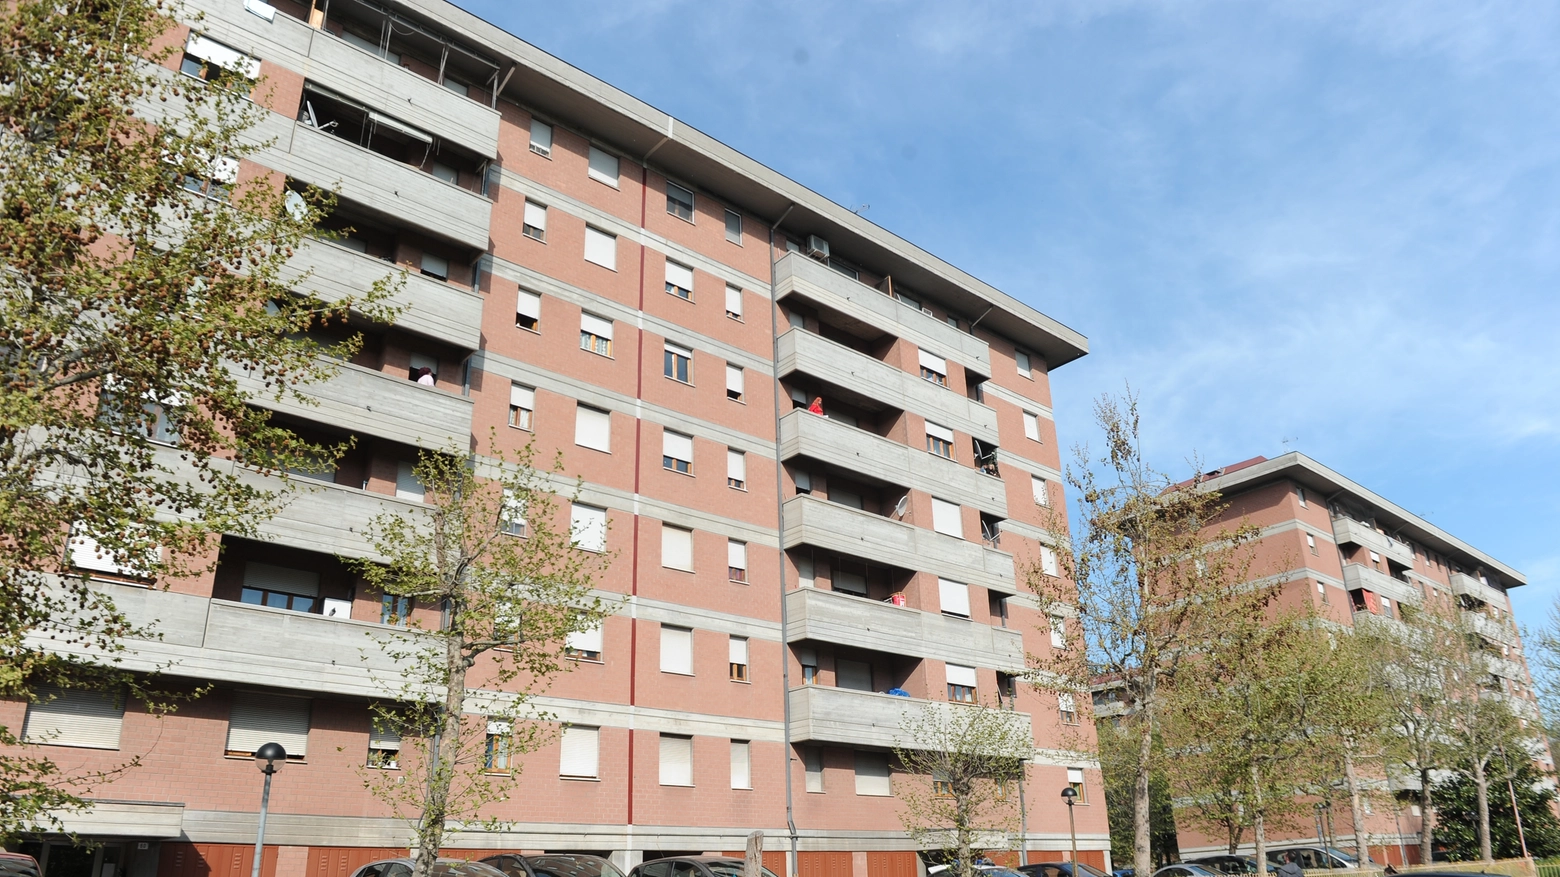 Modena: bimba di 4 anni si sporge e cade dal balcone